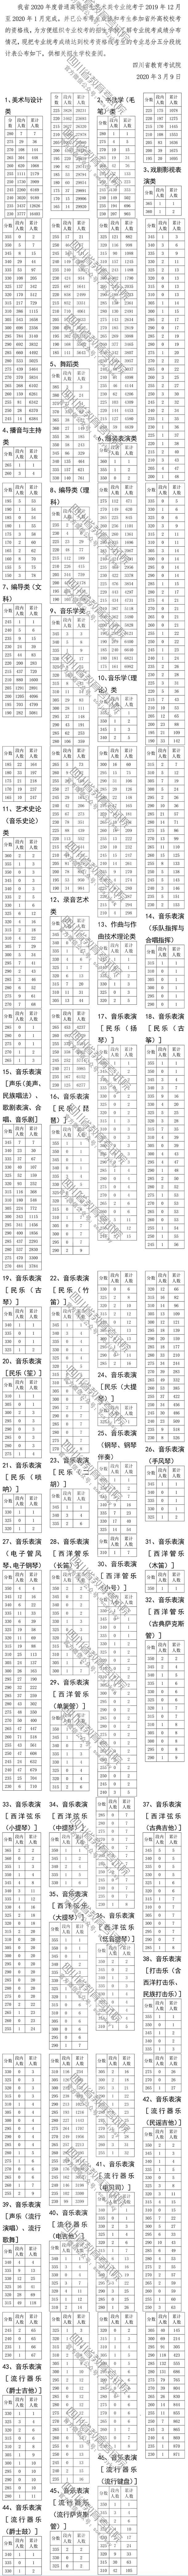 四川美术2020联考247排名_2020四川艺术类专业统考成绩分段表